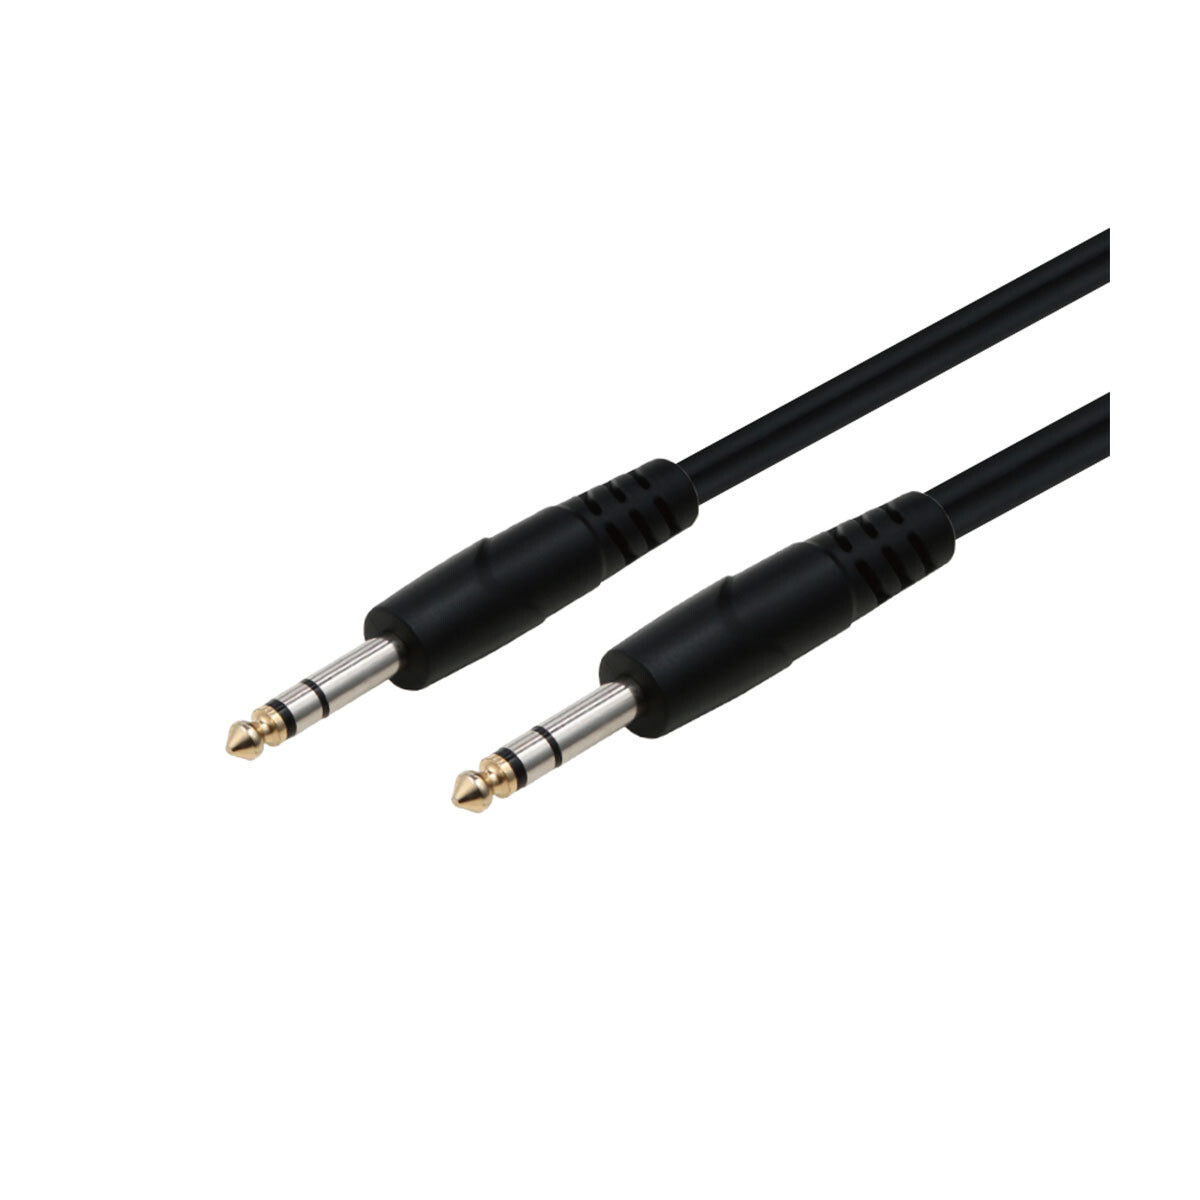 Cable Adaptador Soundking Bjj239 3m 1x6.3st A 1x6.3st Balanceado 